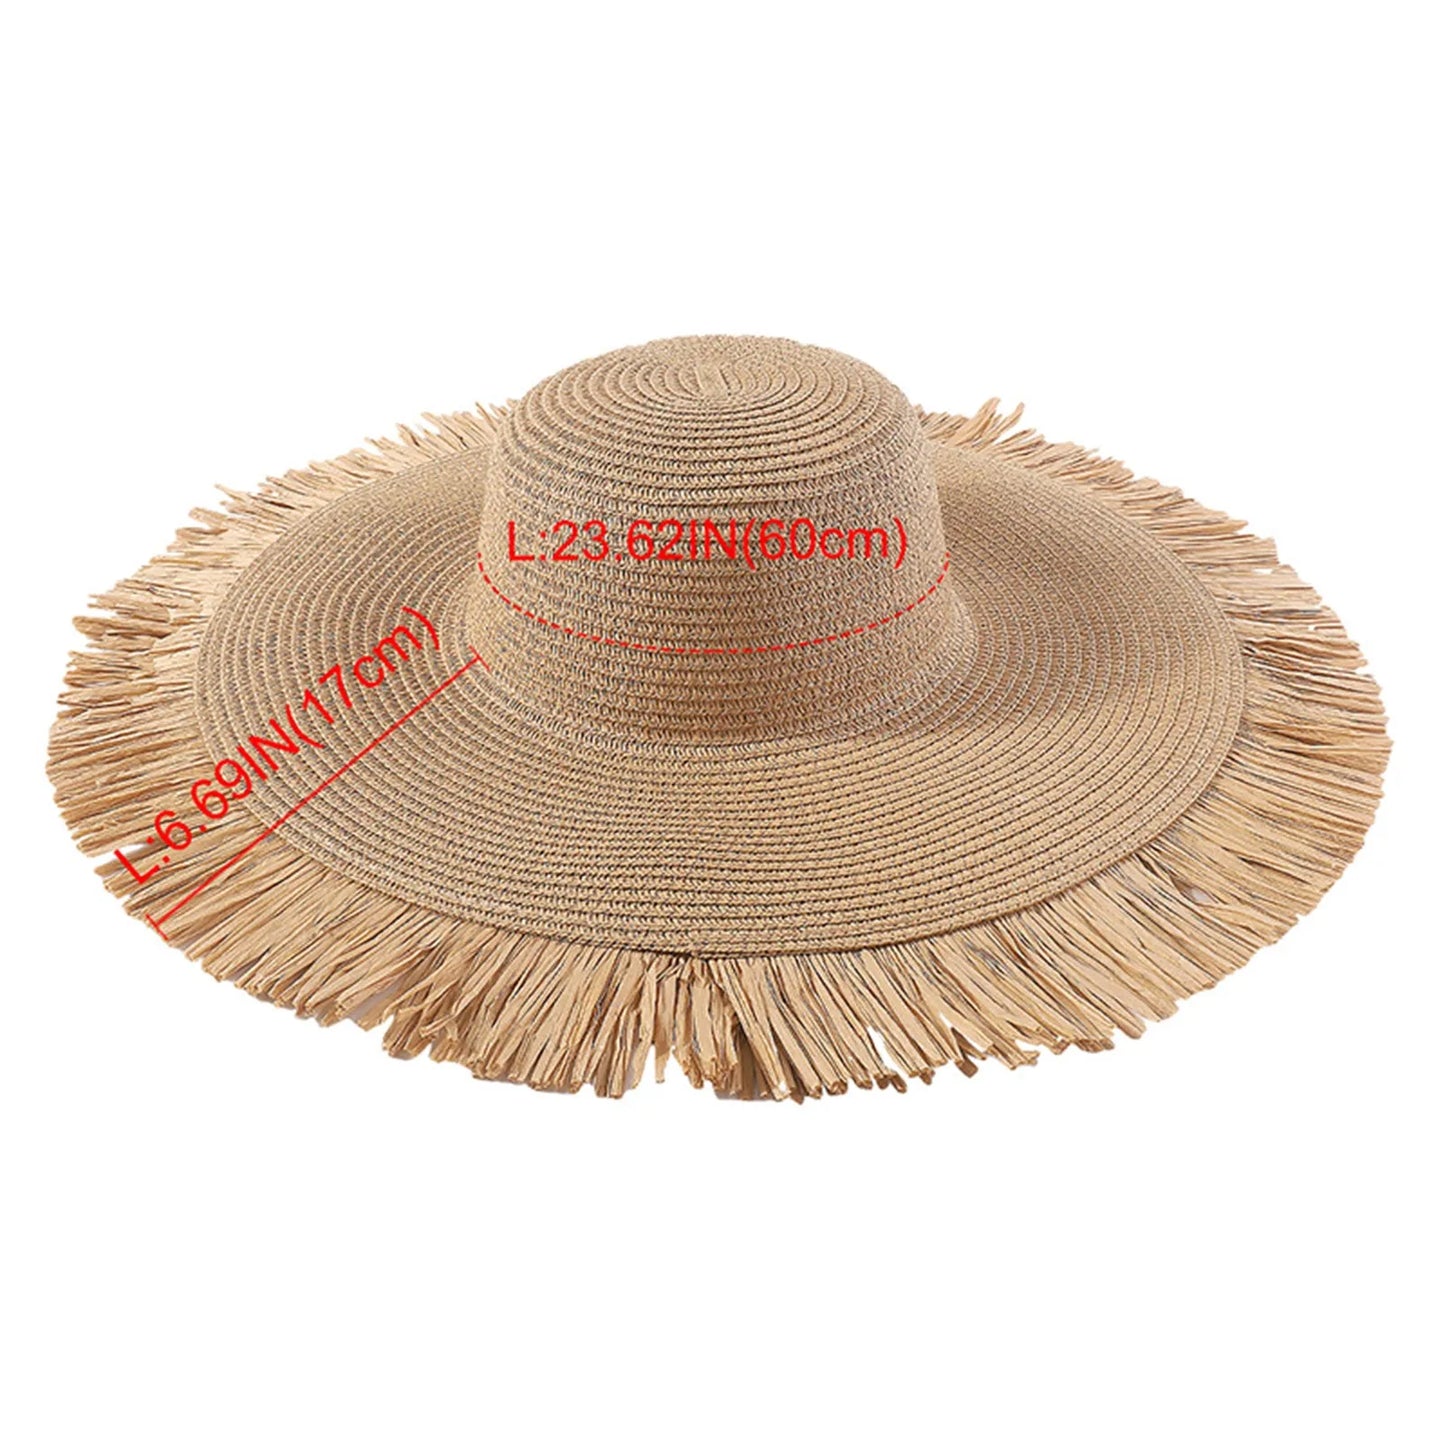 المرأة موضة البوهيمي الصيف في الهواء الطلق كبيرة حافة قبعة الشمس عطلة عادية المنسوجة قبعة للشاطئ القش الإناث قبعة الدهون F I E N D S قبعة